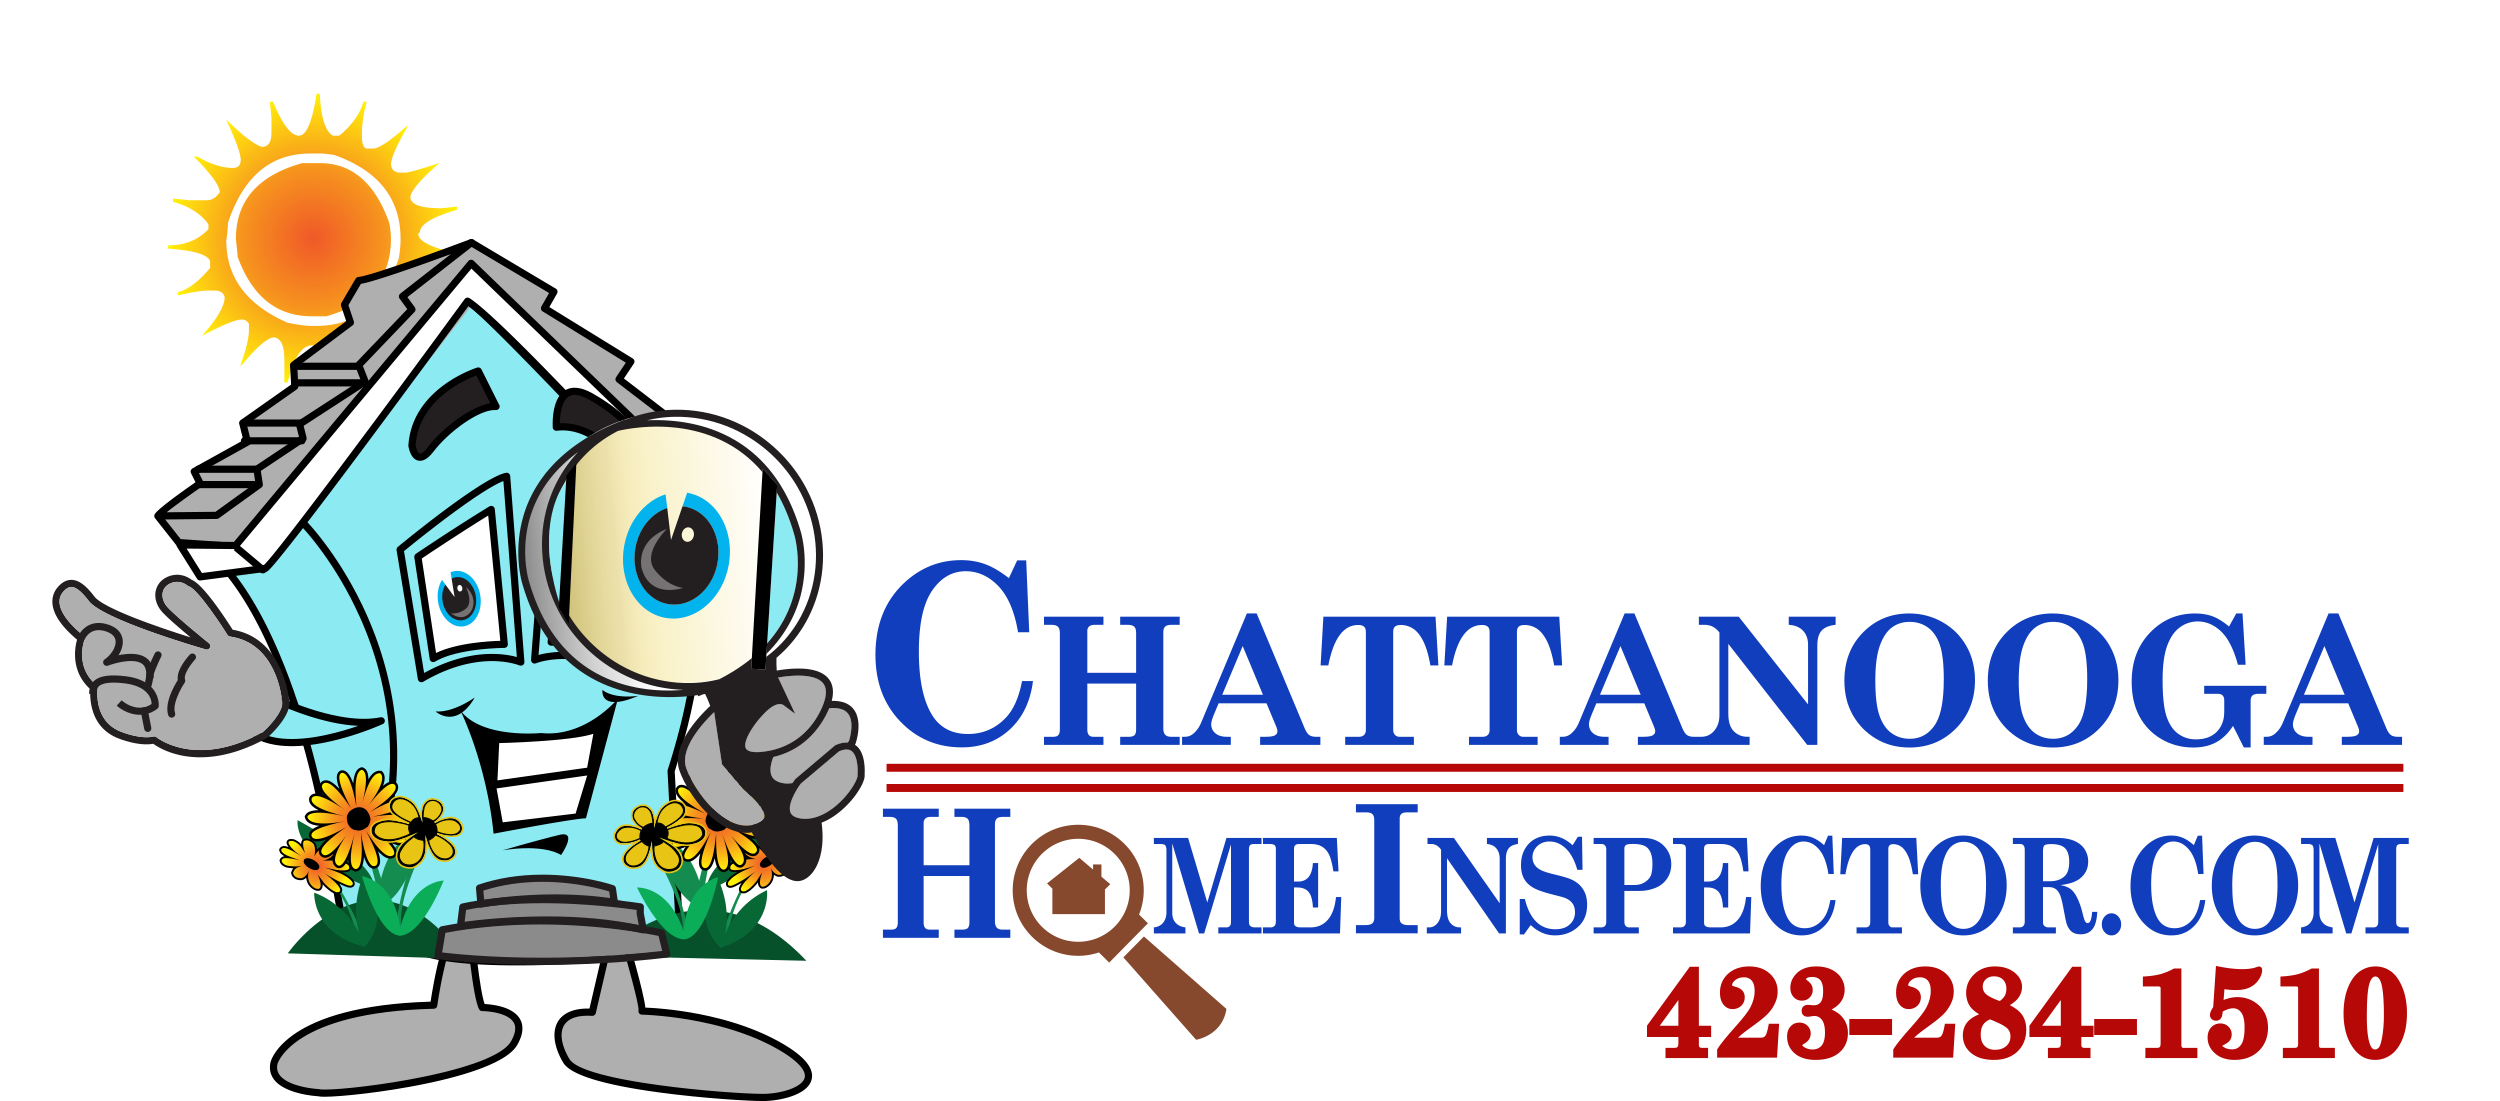 35827-Home Inspector Final logo vector